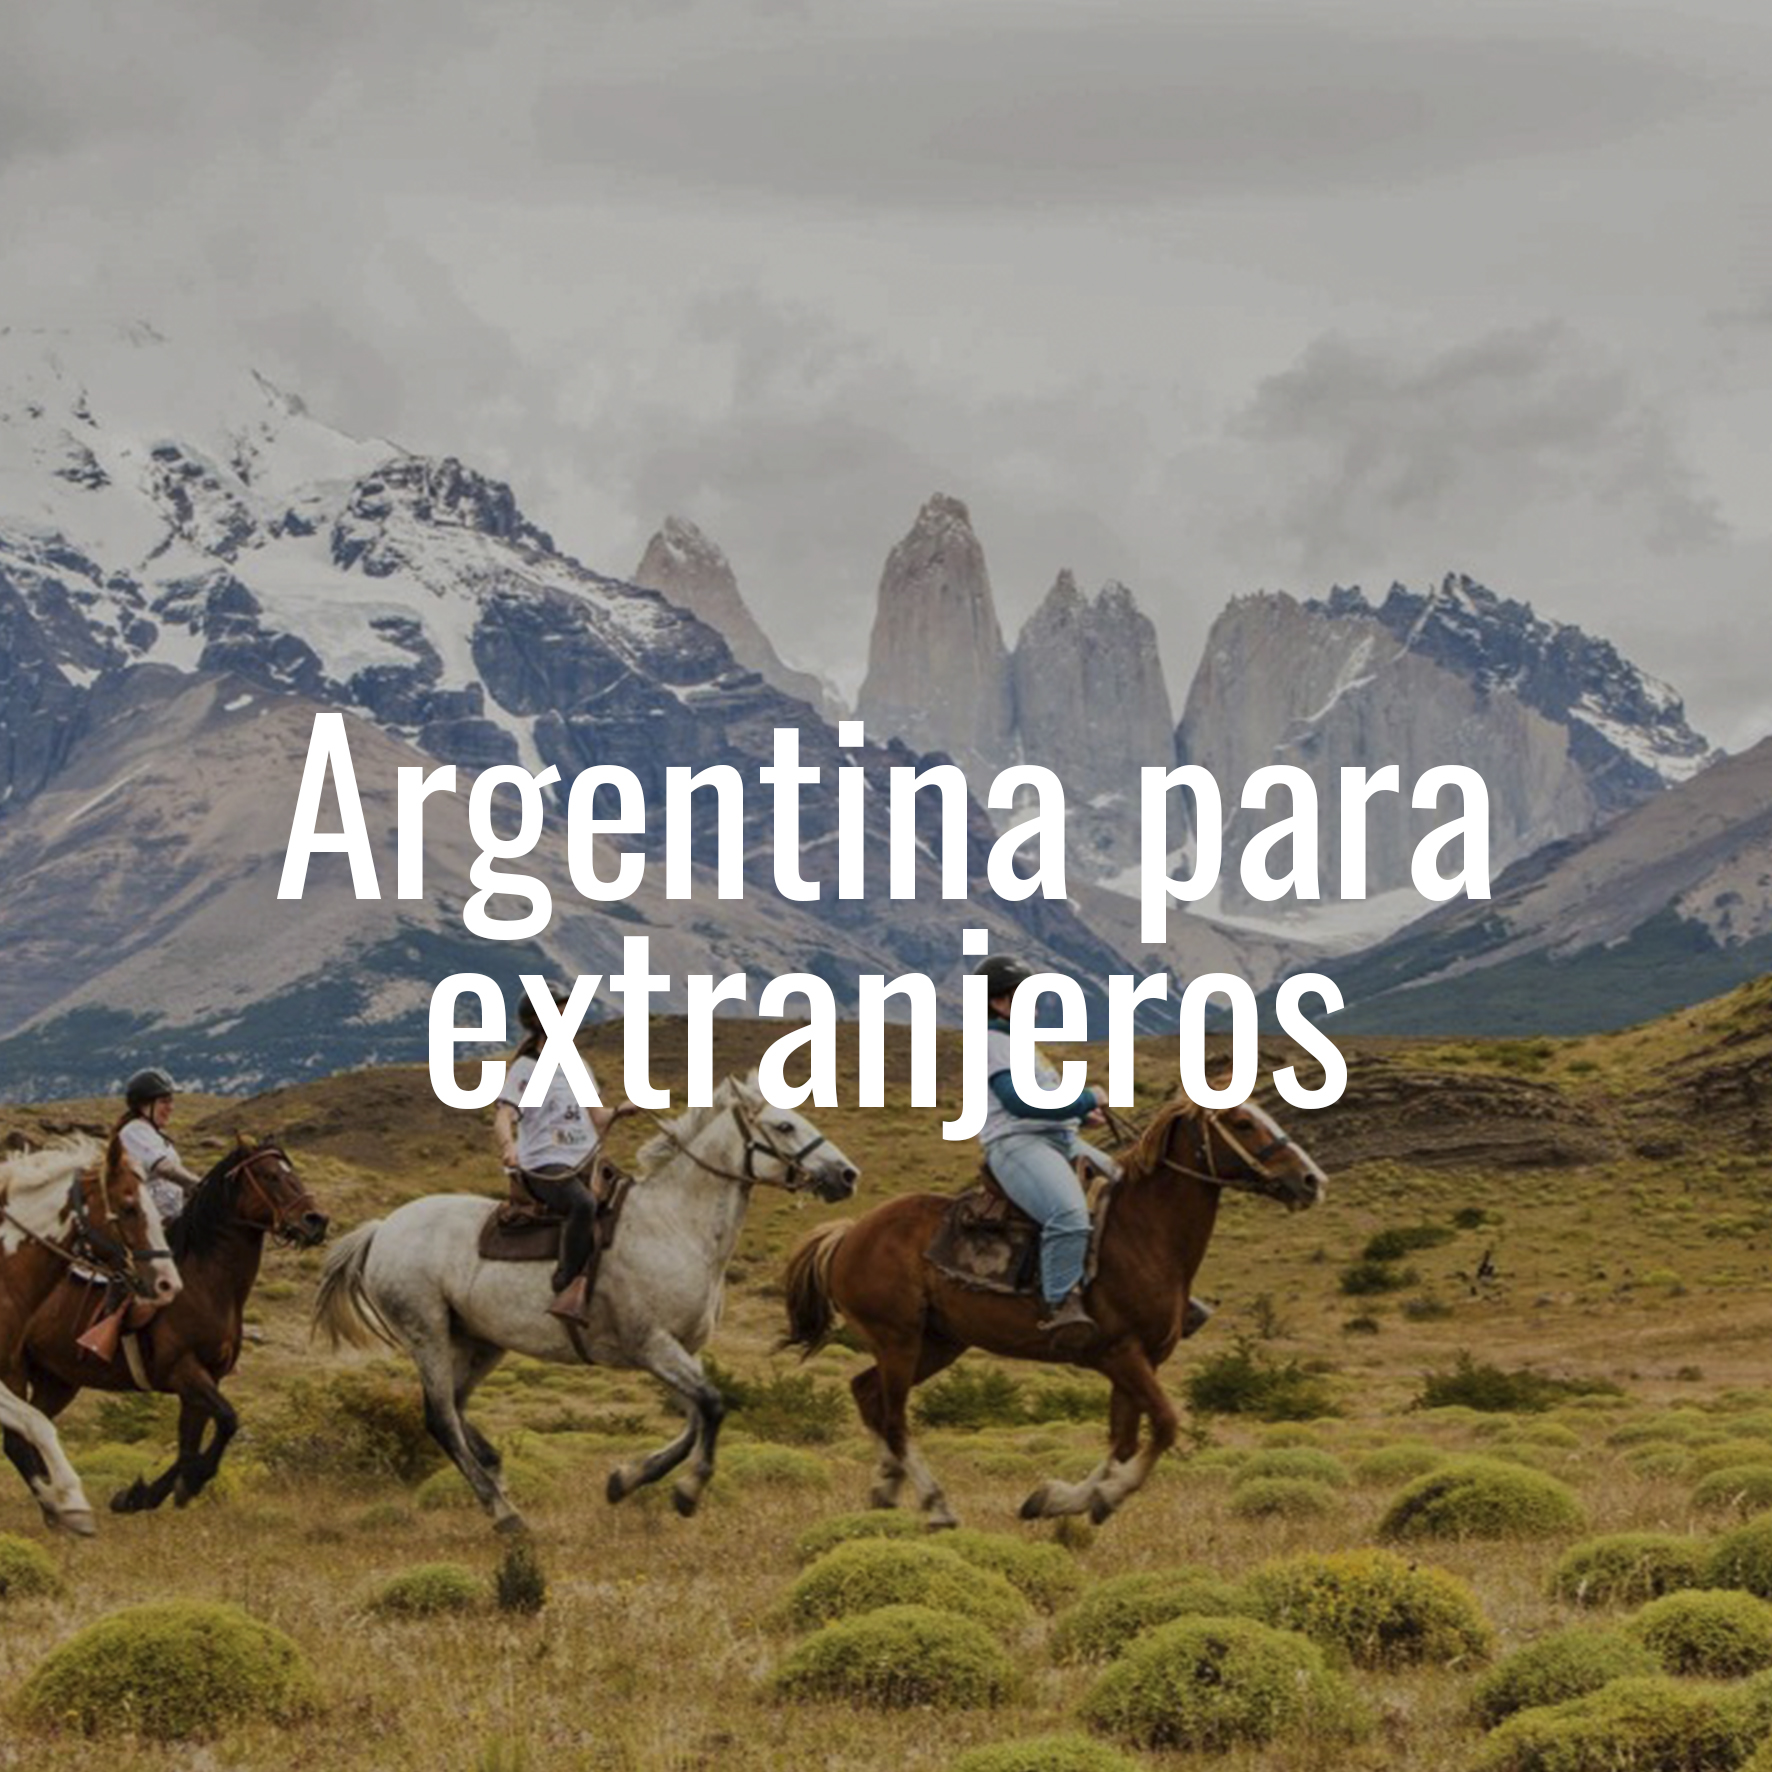 Argentina para Extranjeros